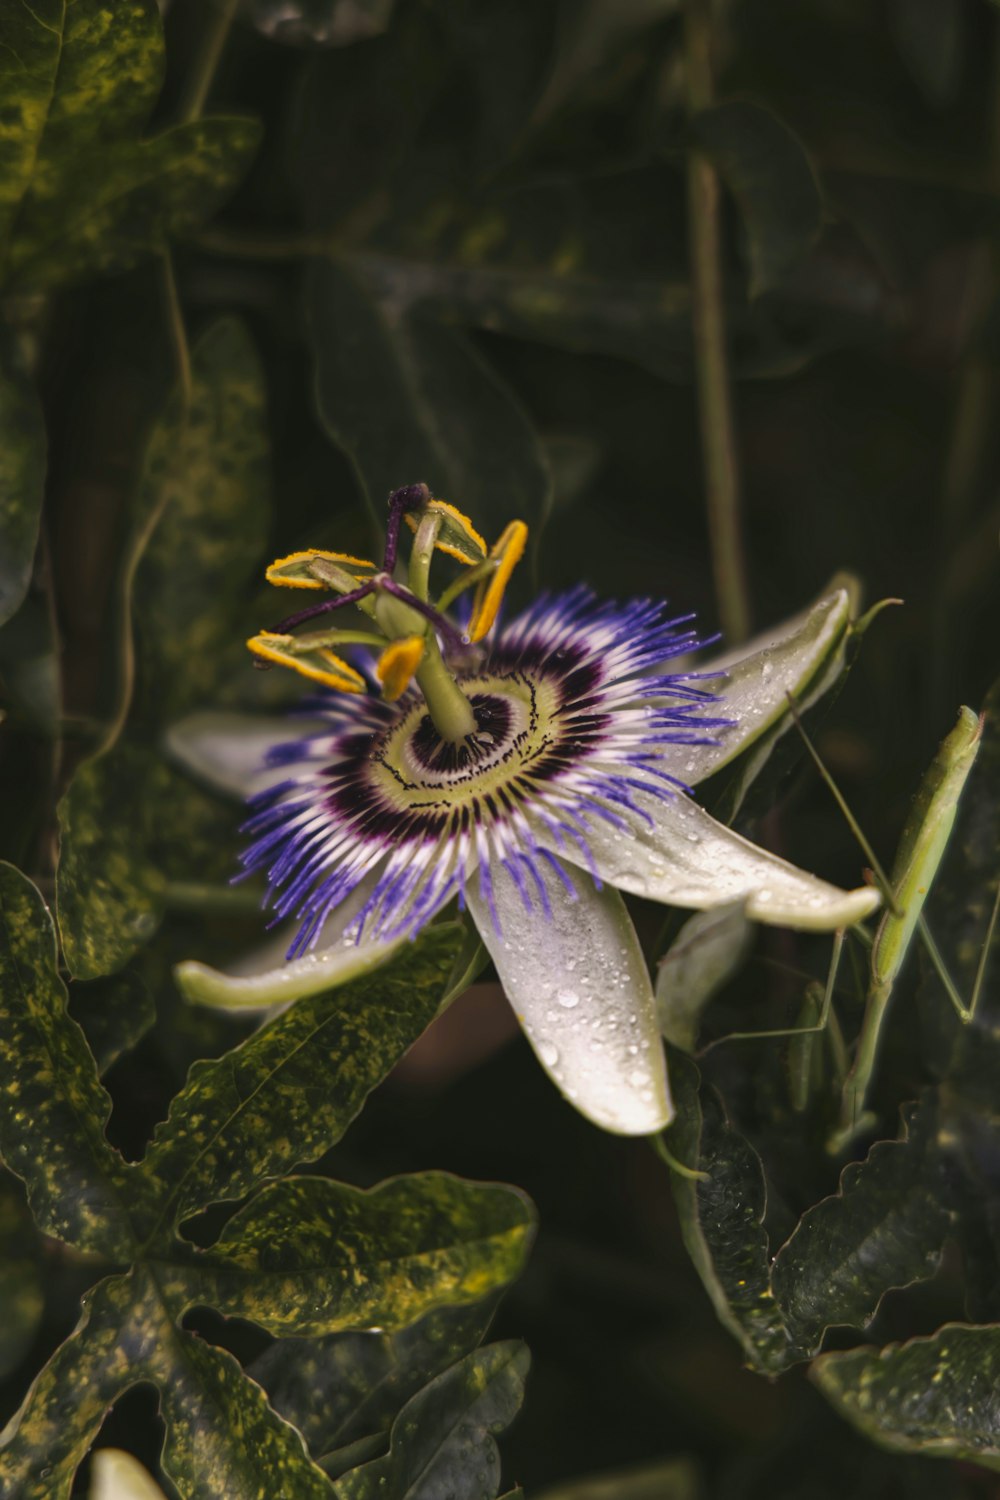 チルトシフトレンズの白と紫の花